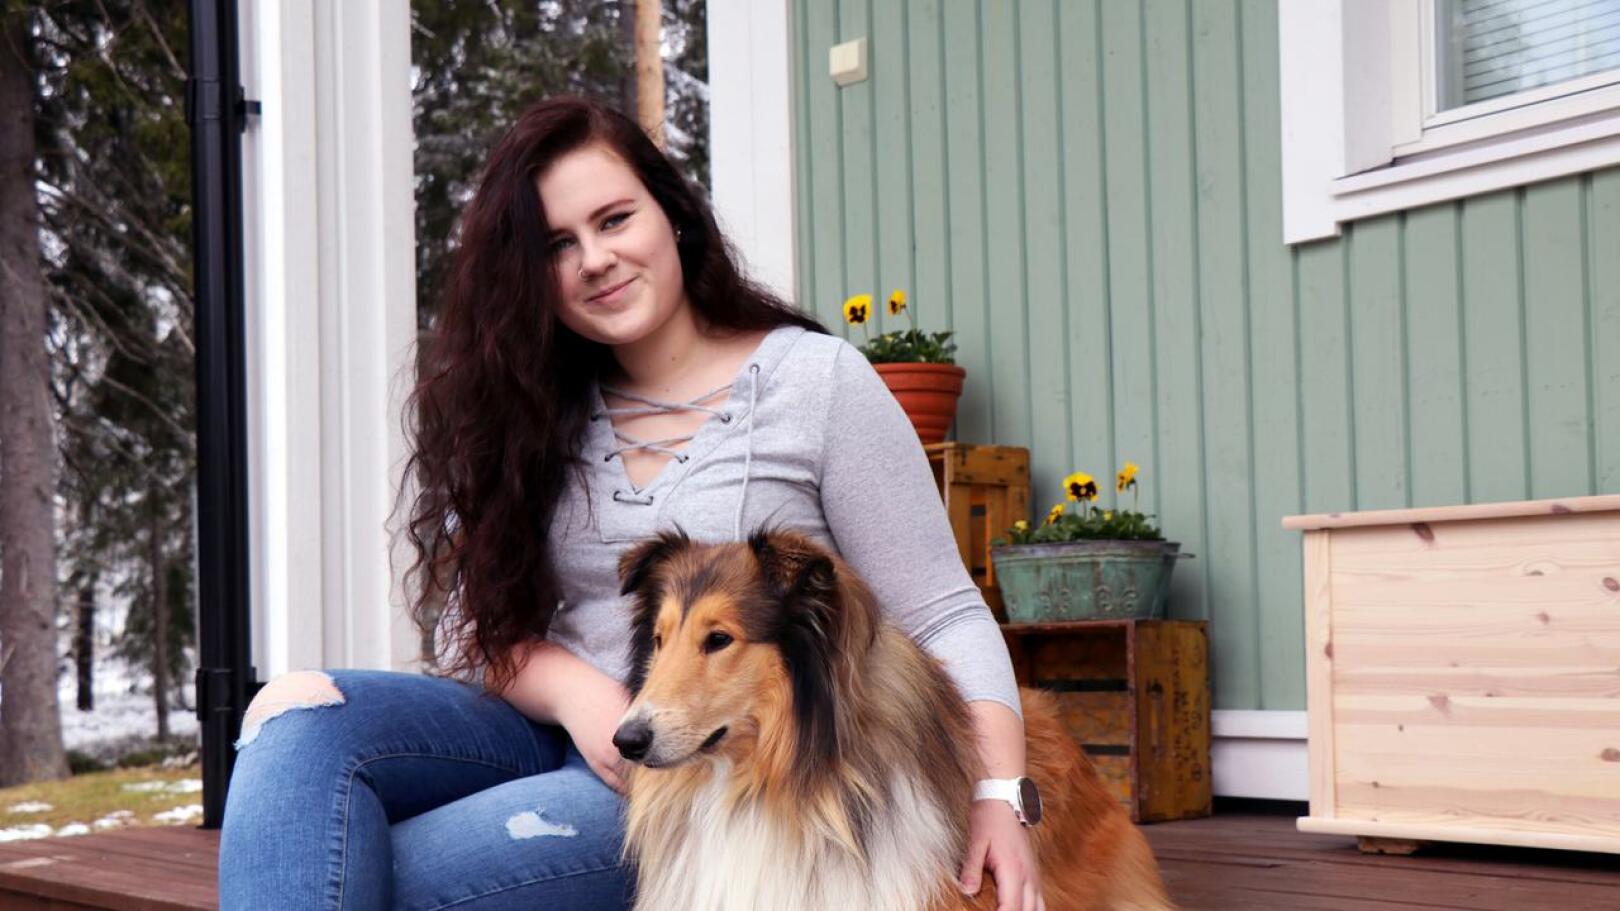 Alina Voutila suuntaa lukion jälkeen armeijaan, jossa hänellä on tavoitteena joko sotilaspoliisin tai sotakoiraohjaajan koulutus. Kuvassa Alinan kainalossa on perheen Rocky-koira.